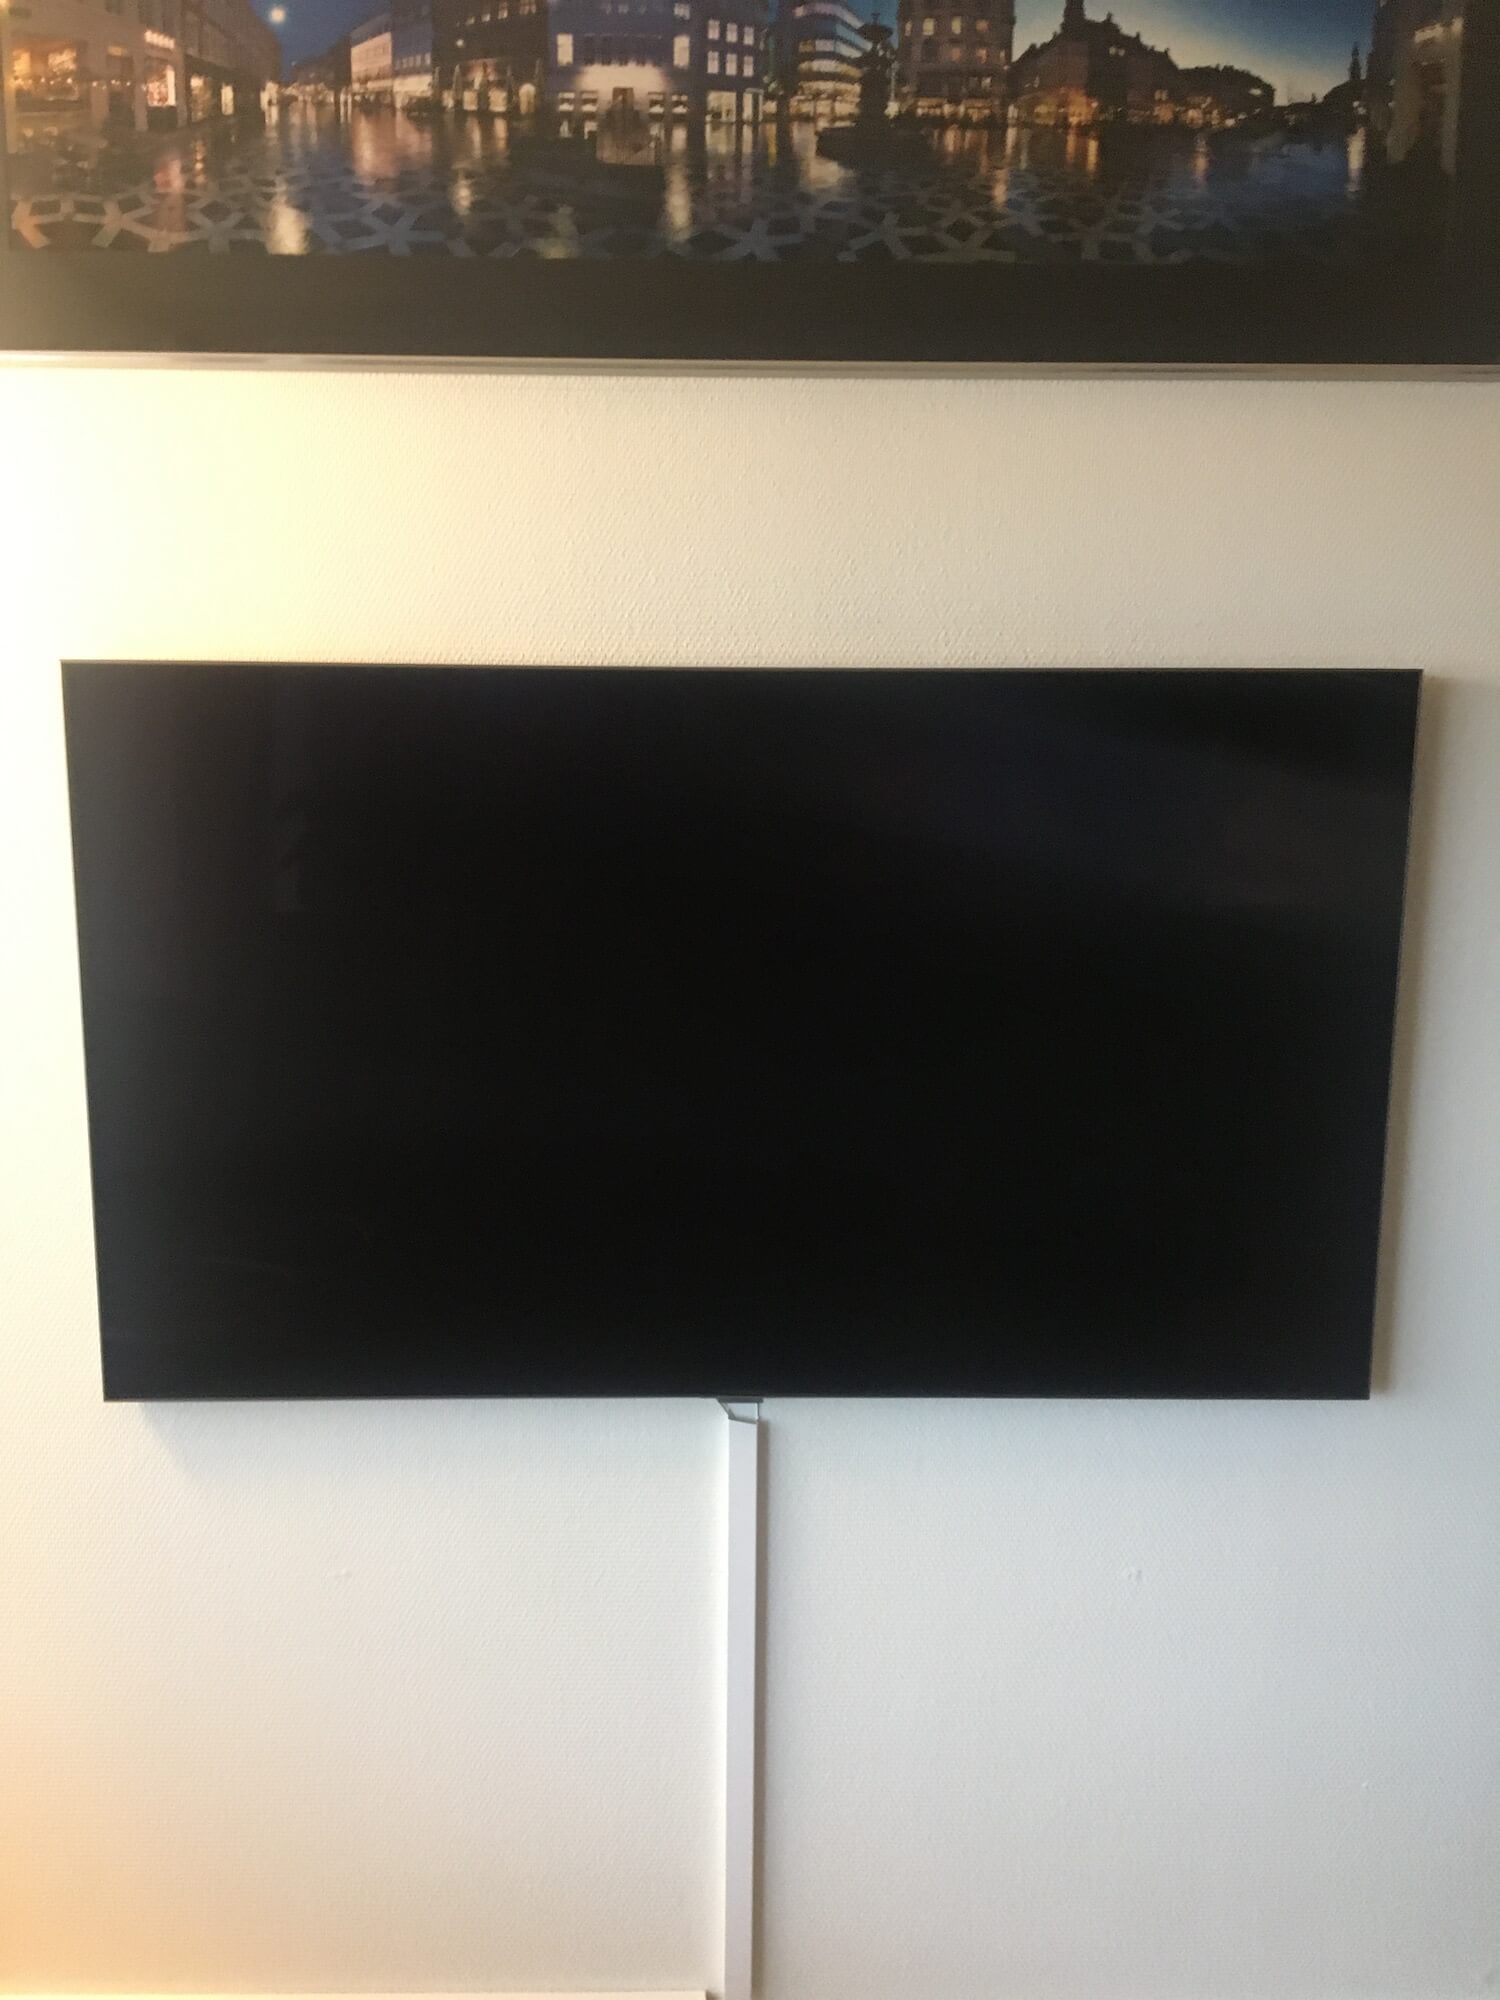 Montering af LG TV på gipsvæg med fladt vægbeslag